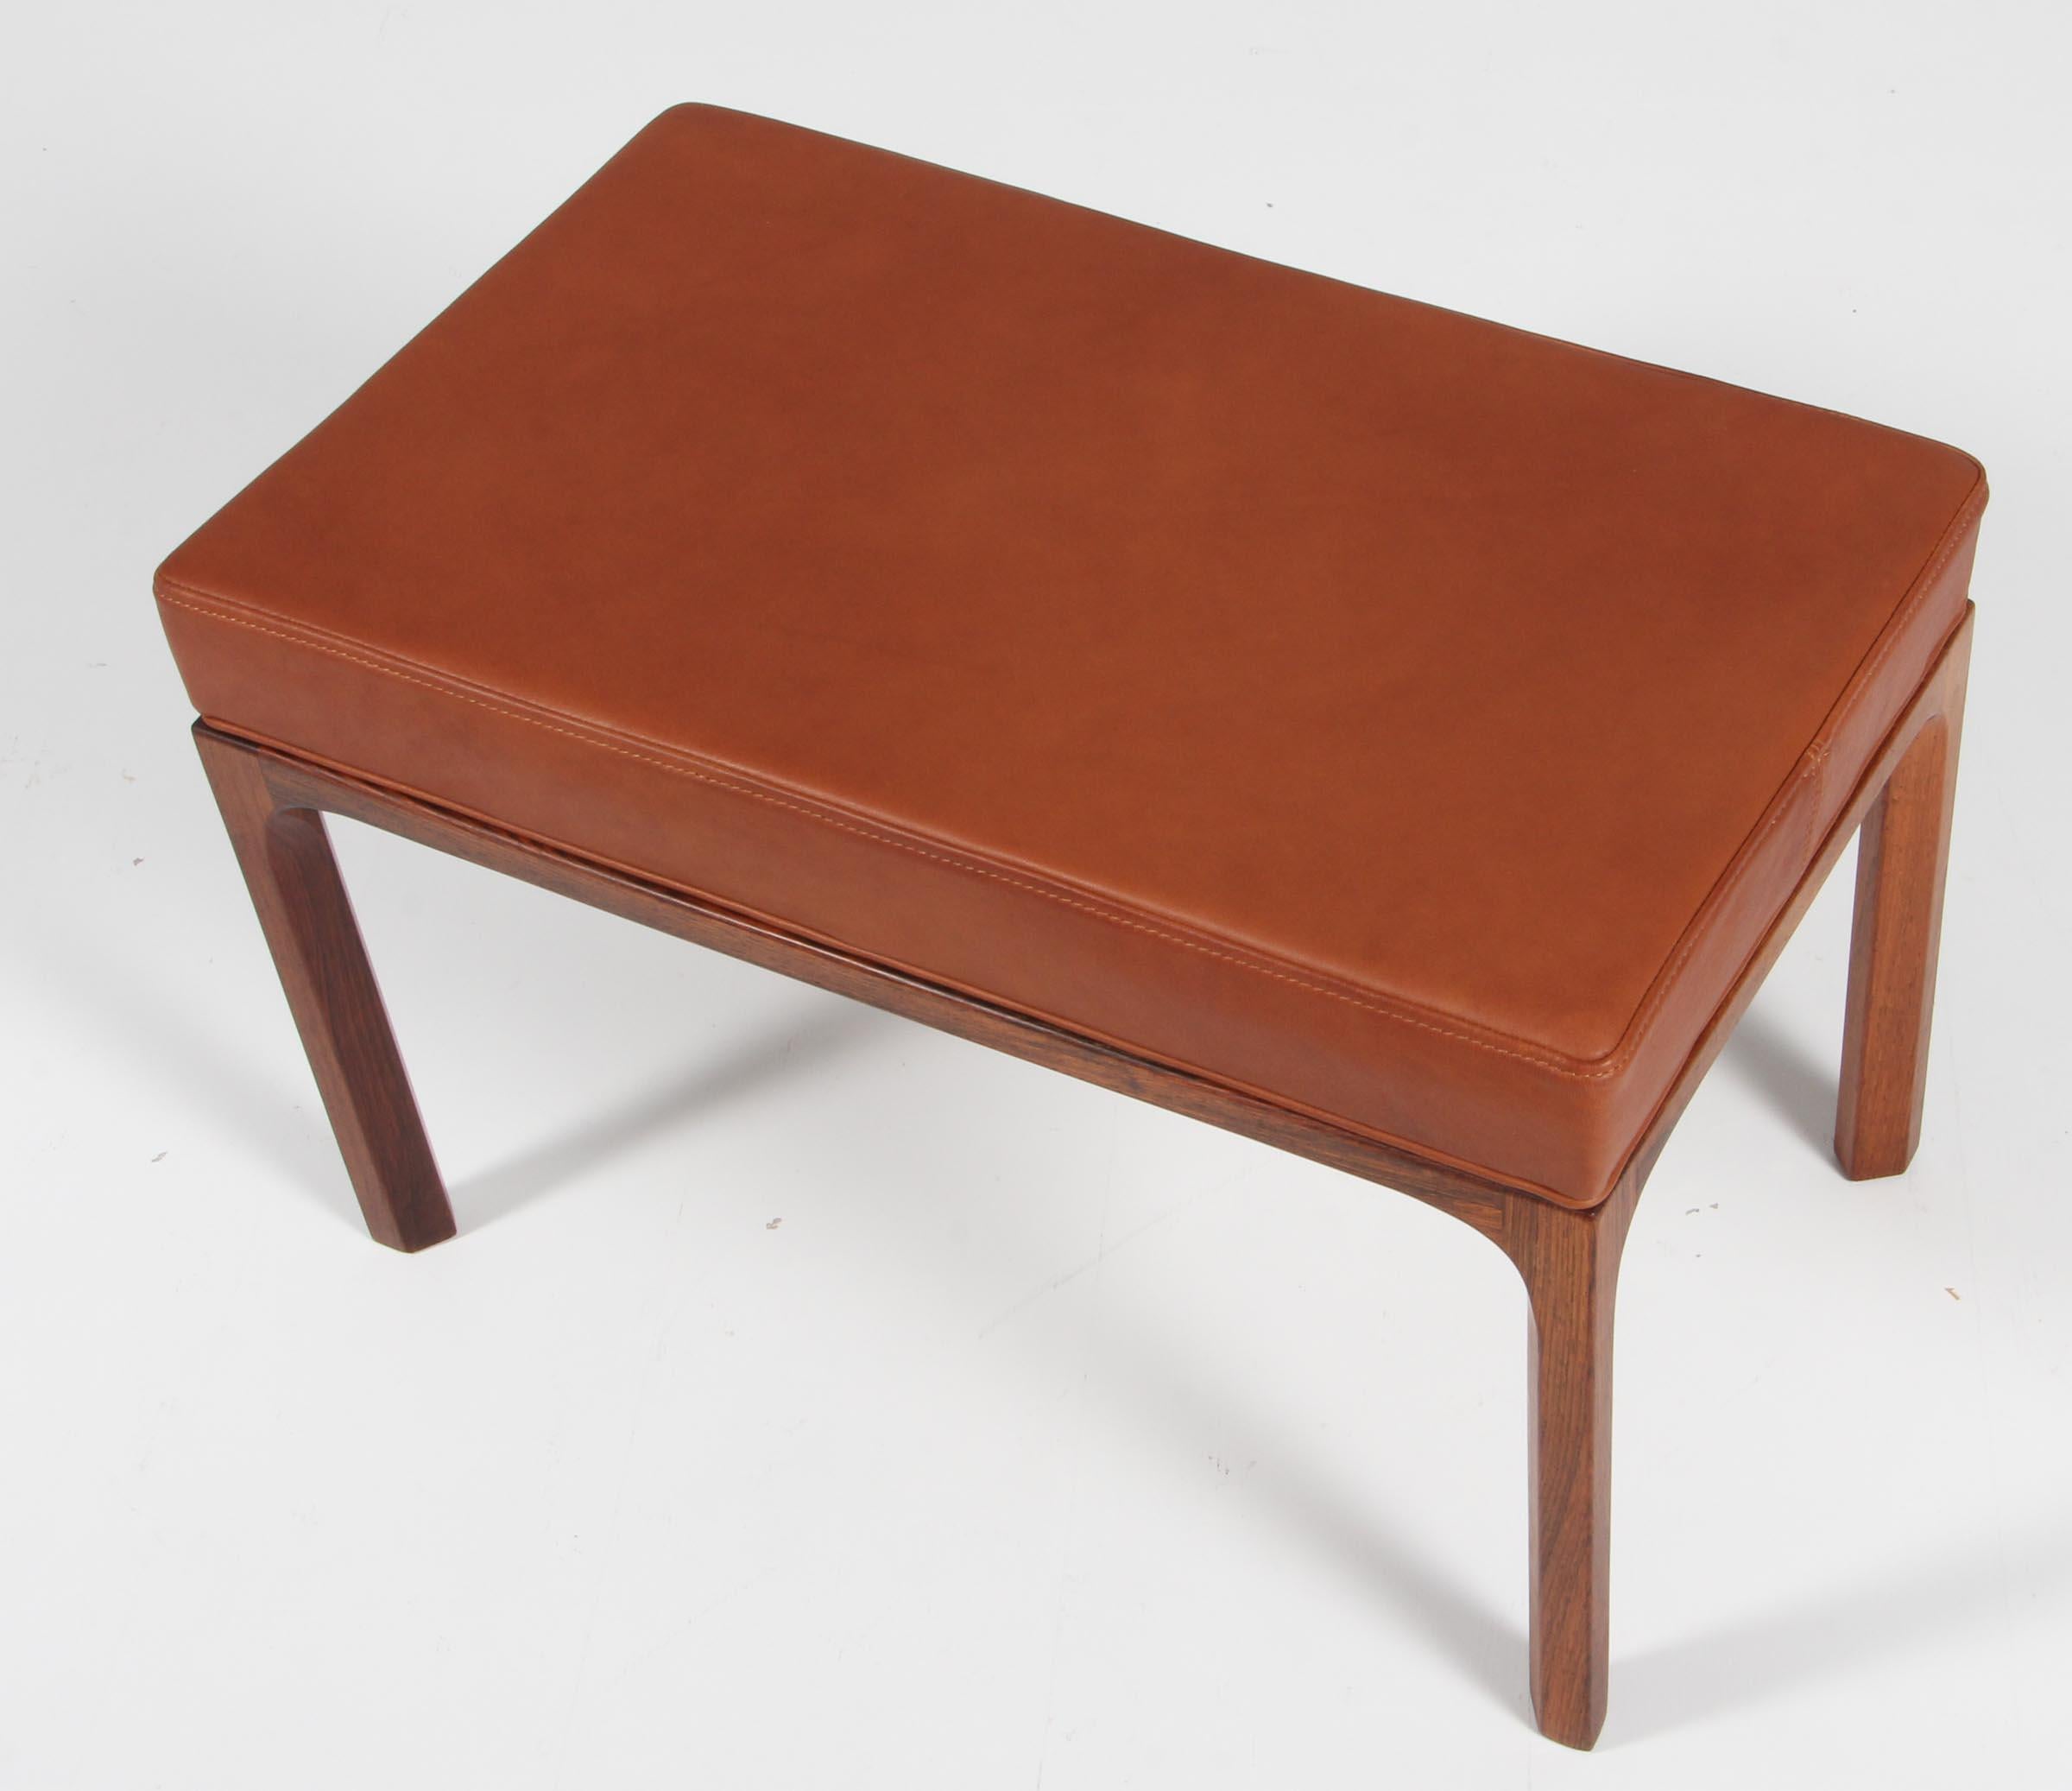 Pouf Kai Kristiansen avec nouveau siège rembourré en cuir aniline cognac.

Fabriqué en bois de rose massif.

Réalisé par Aksel Kjersgaard dans les années 1960.